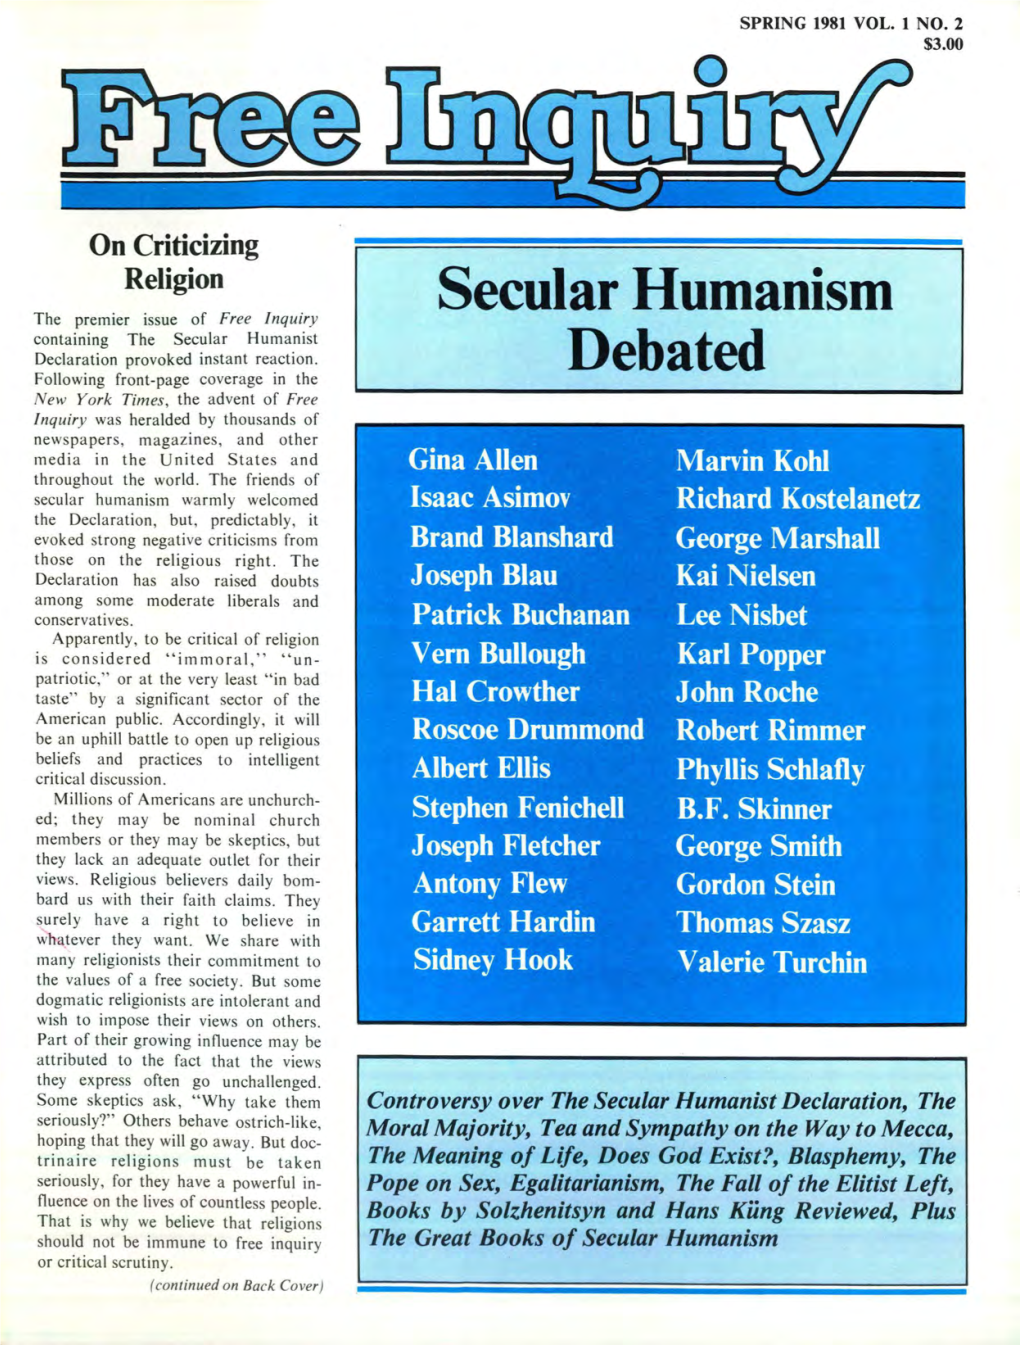 Secular Humanism Debated